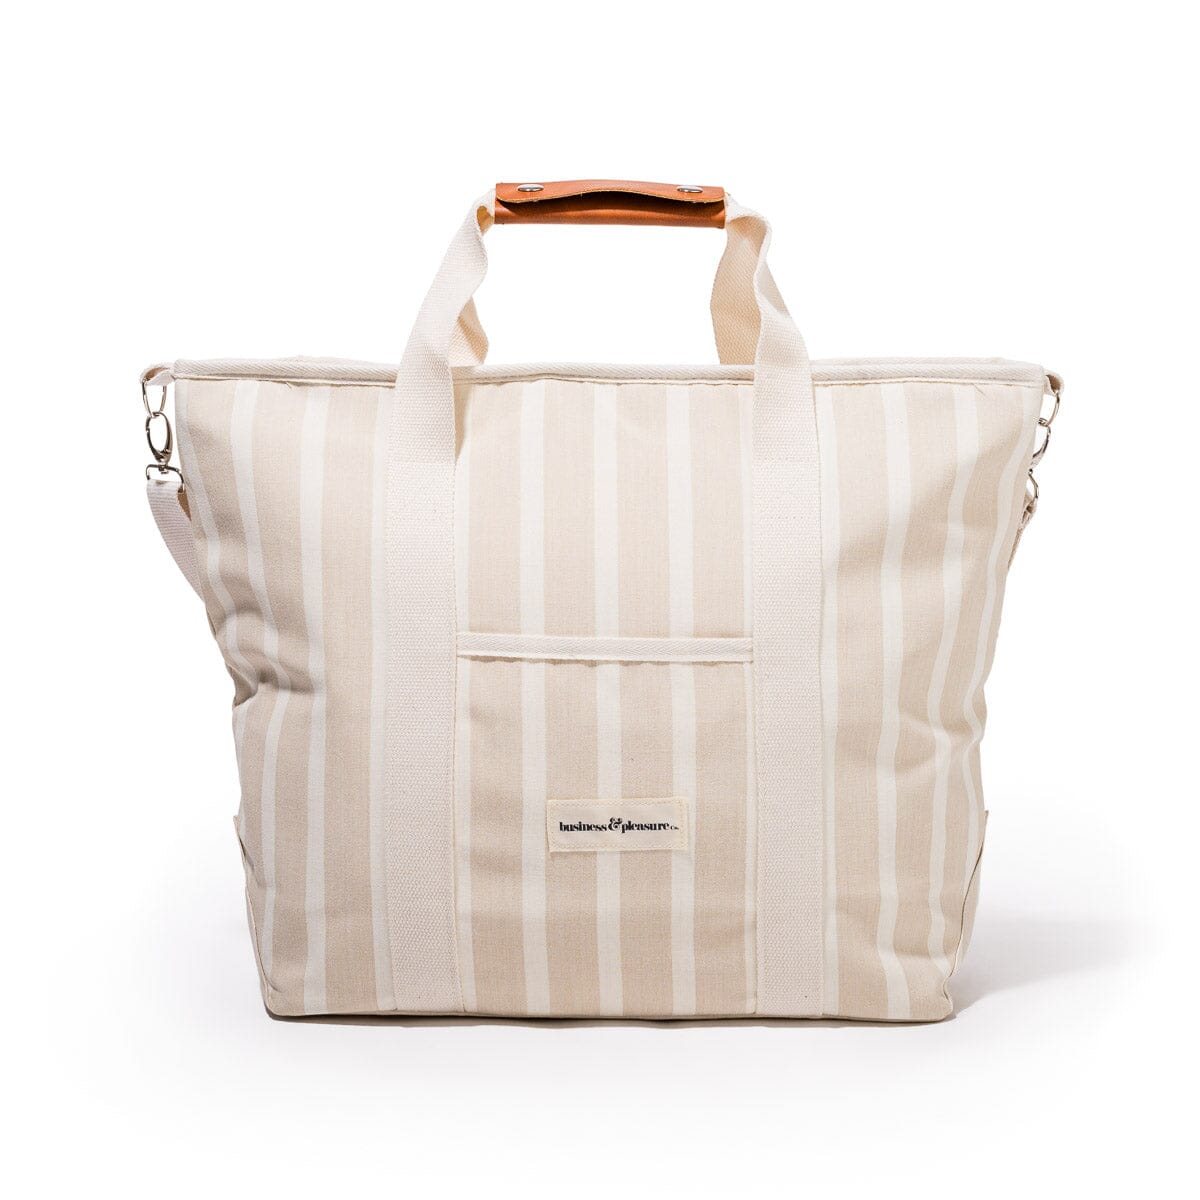 The Cooler Tote Bag - Monaco Natural Stripe Cooler Tote Business & Pleasure Co 